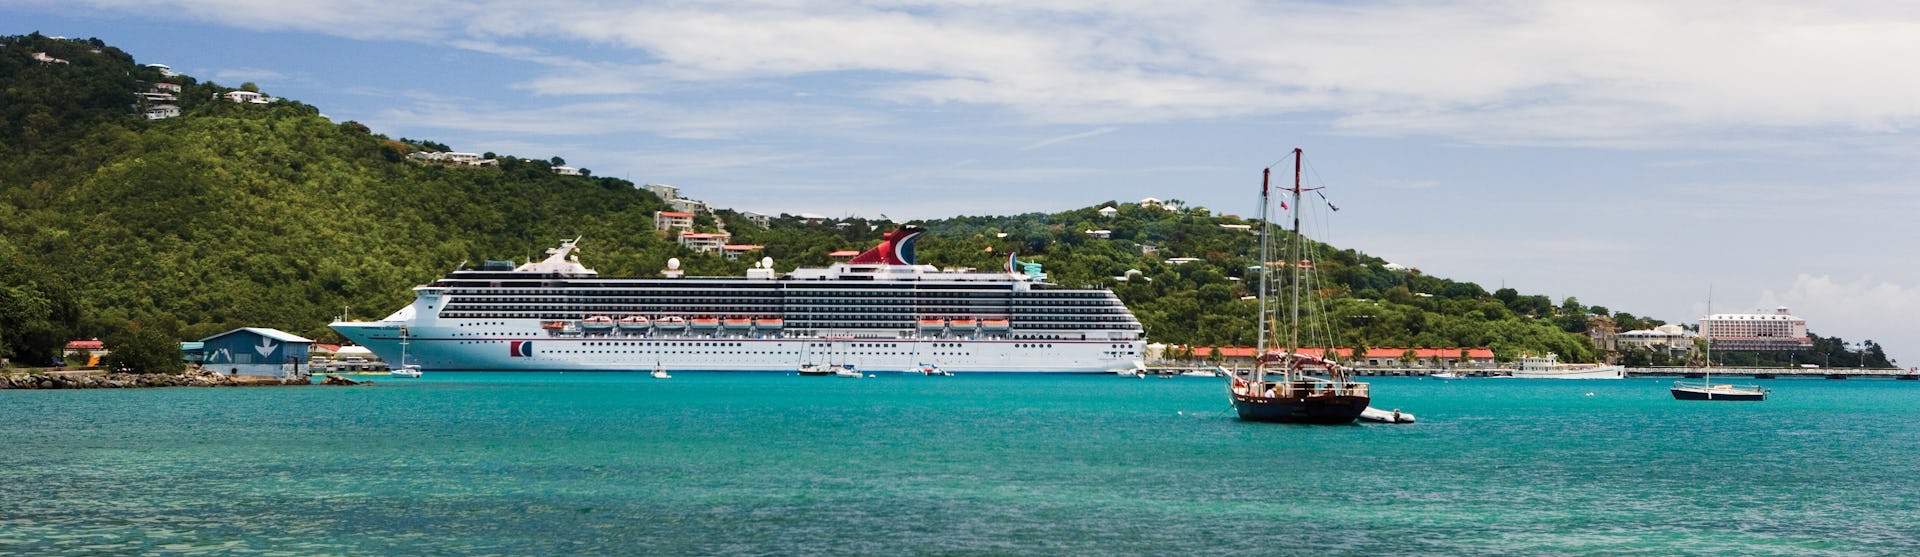 Carnival Legend ligger ankrad i en vacker hamn med klart blått vatten med gröna berg i bakgrunden.